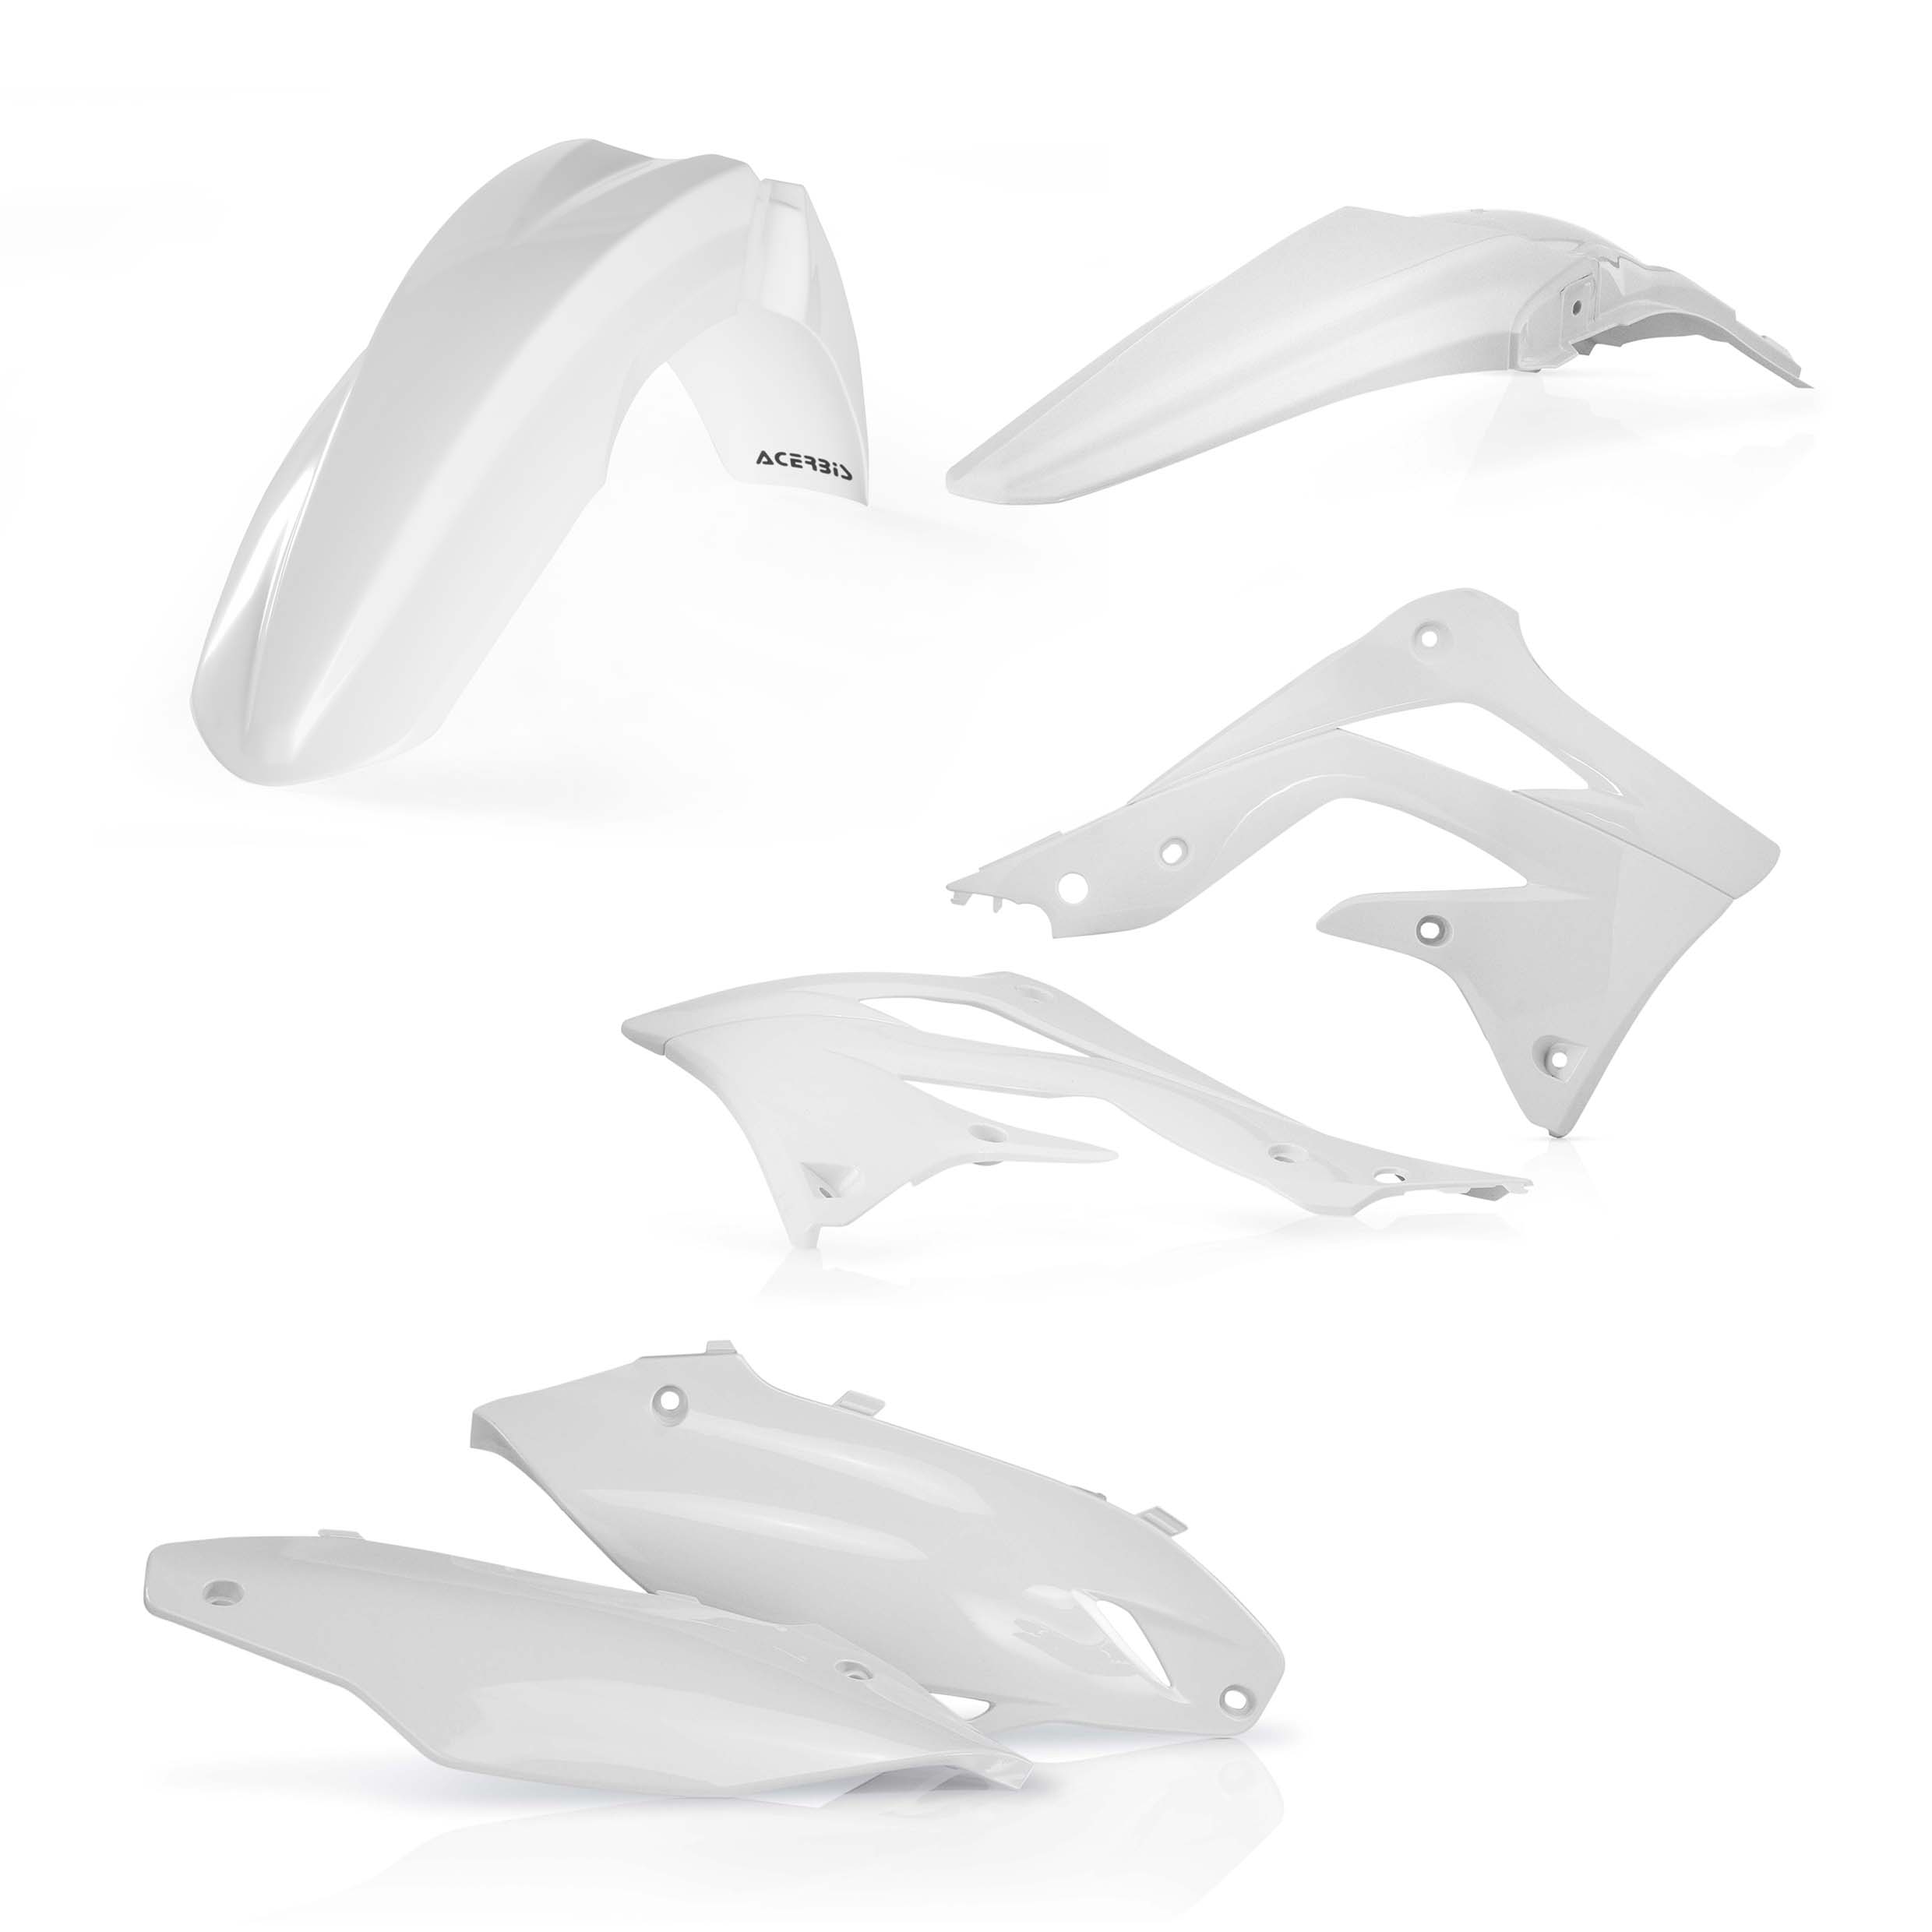 Plastikteile für deine Kawasaki KX 450 in weiß bestehend aus Kotflügel vorn Kotflügel hinten Kühlerspoiler Seitenteile